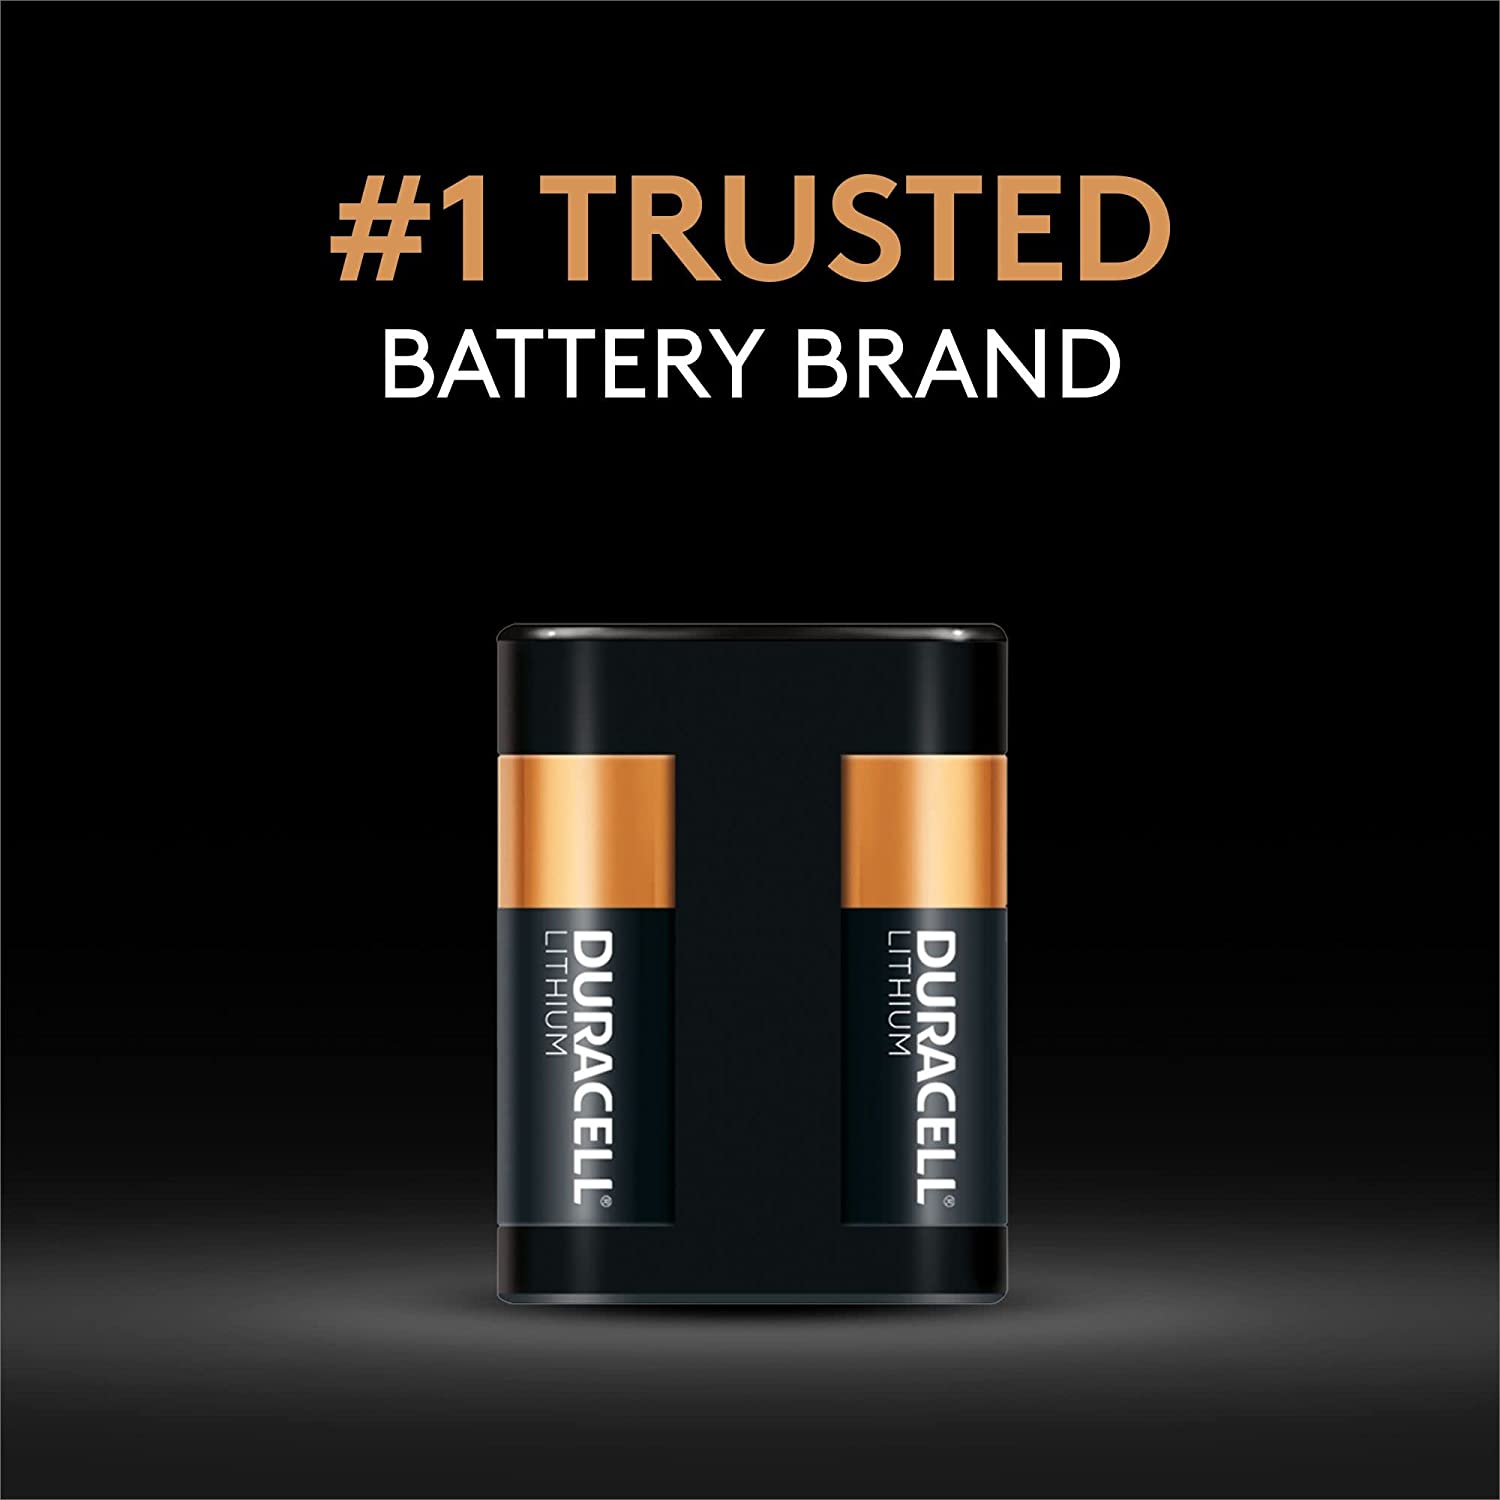 Duracell Ultra 2CR5, 6V Lithium Fotobatterie, 245, 1400mAh, 1er-Pack